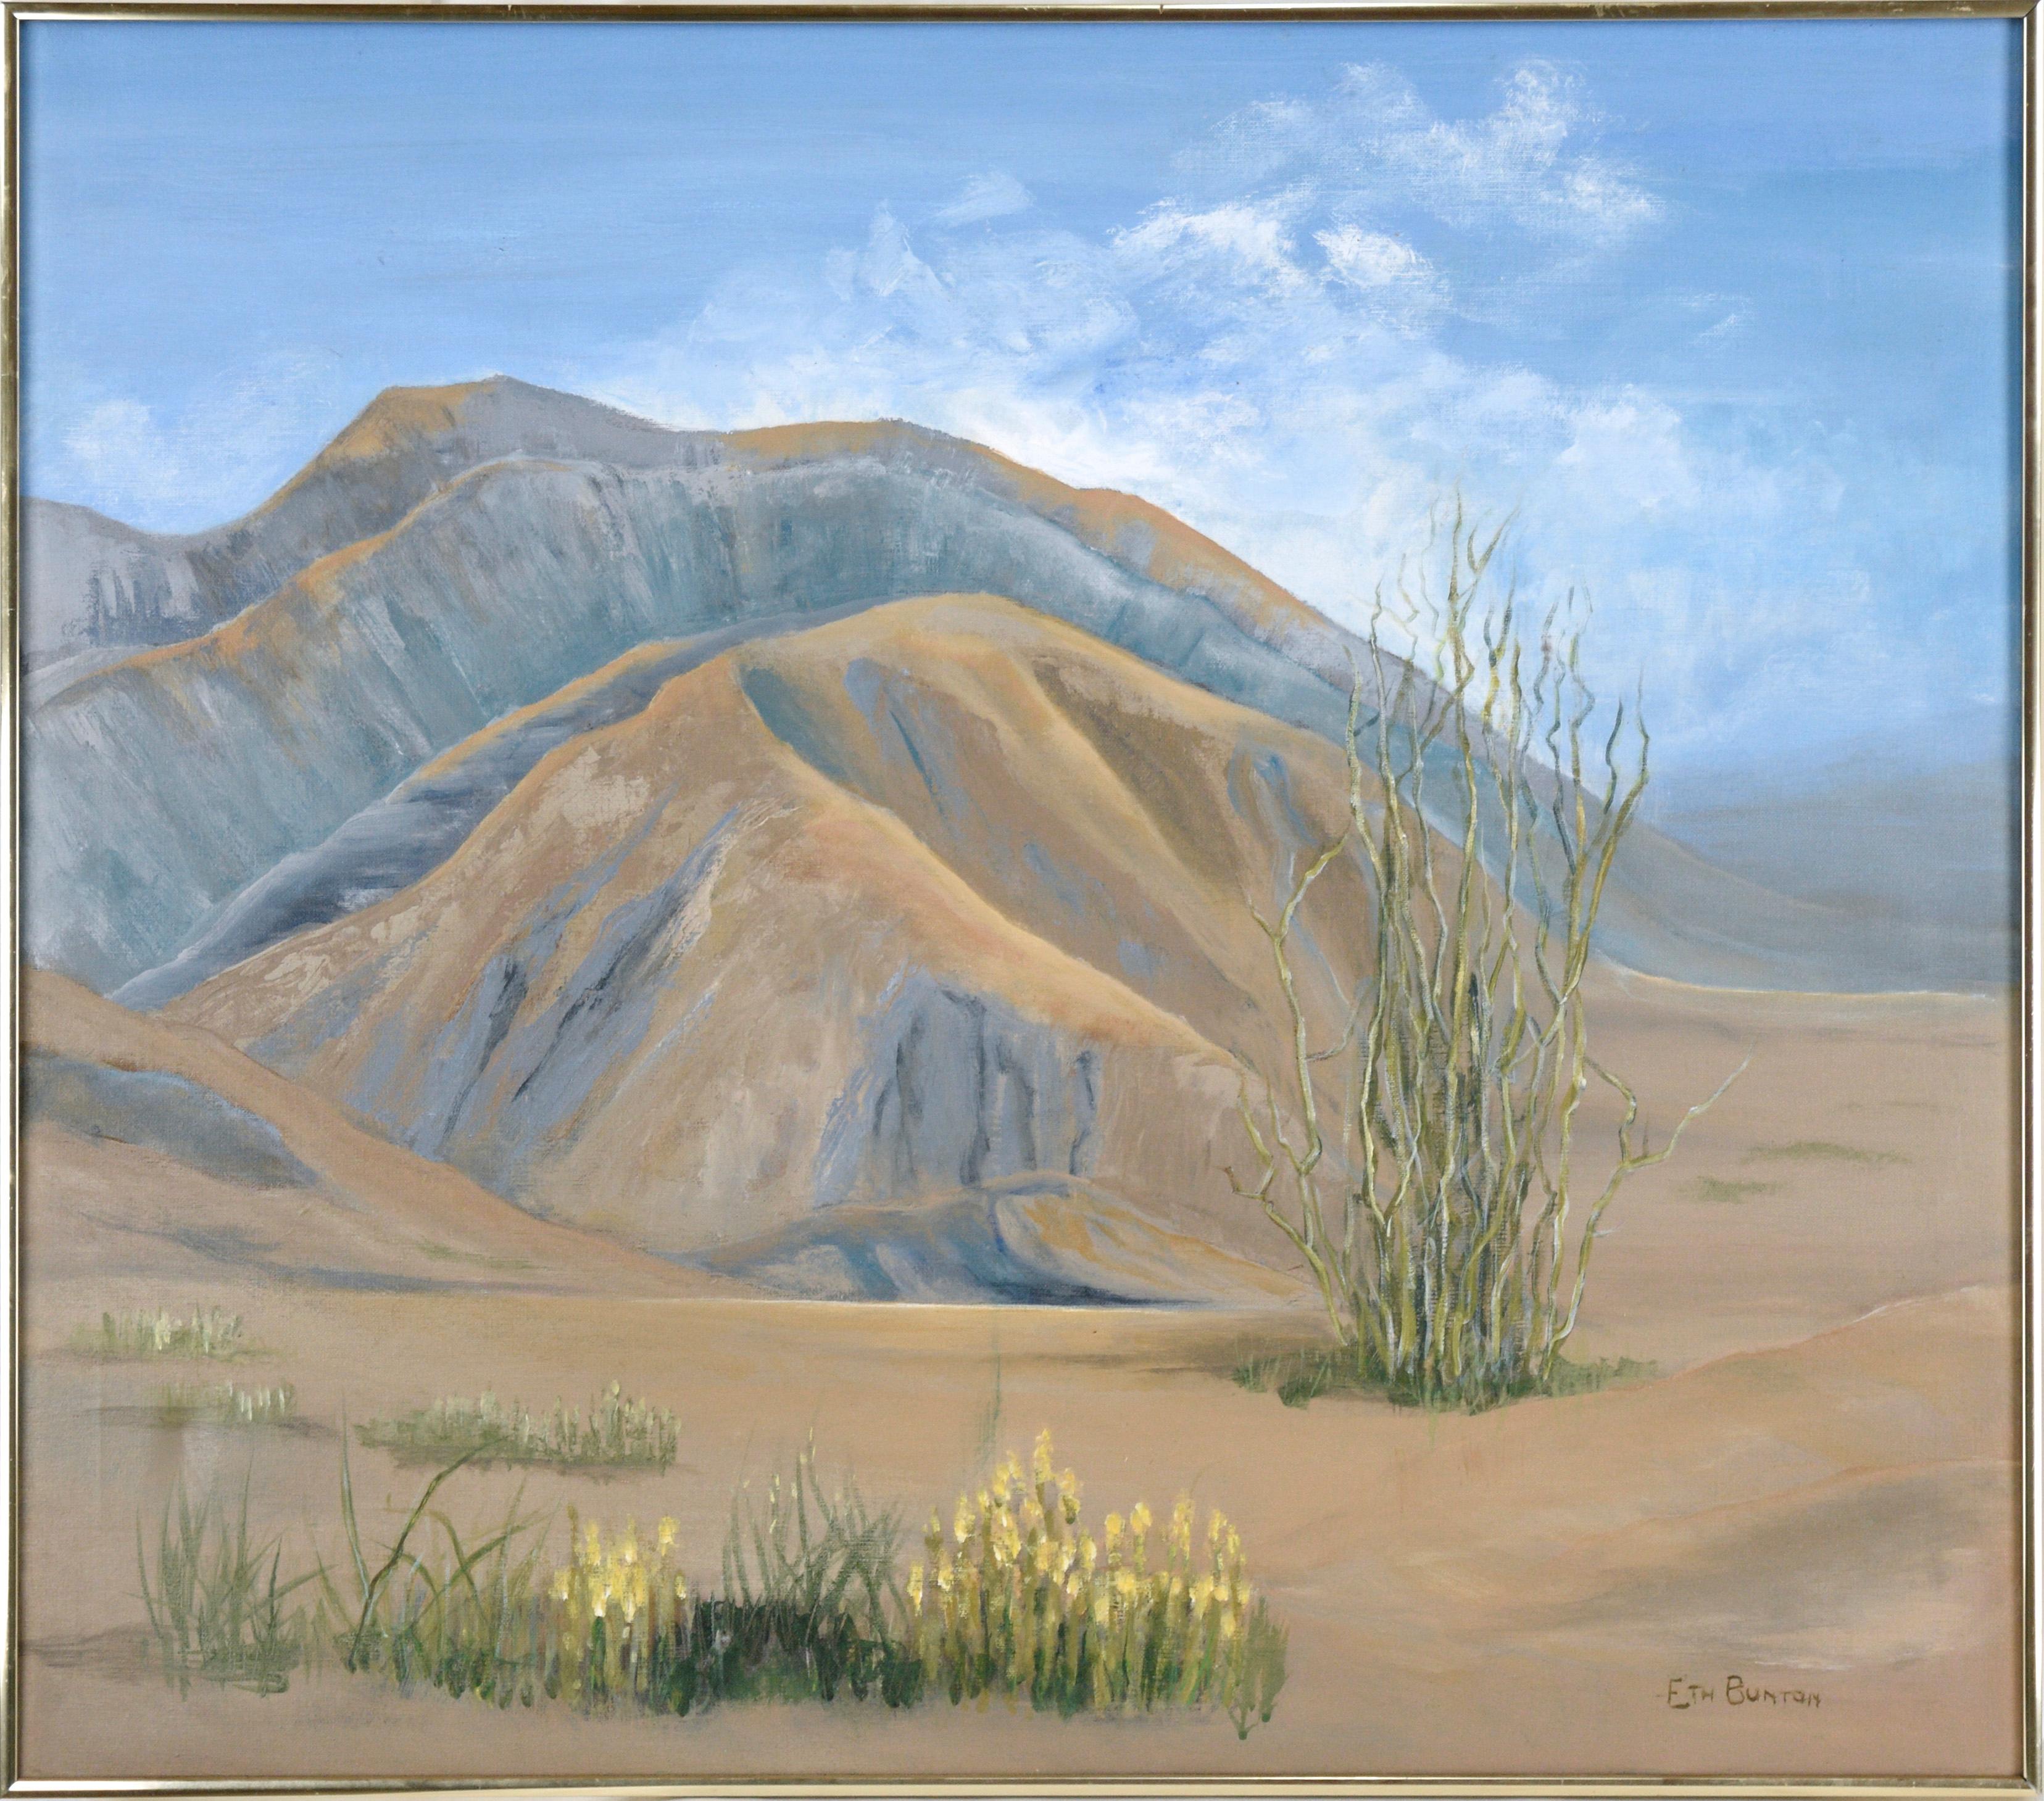 Wüstenflüsse unter einem blauen Himmel – Landschaft in Acryl auf Leinwand